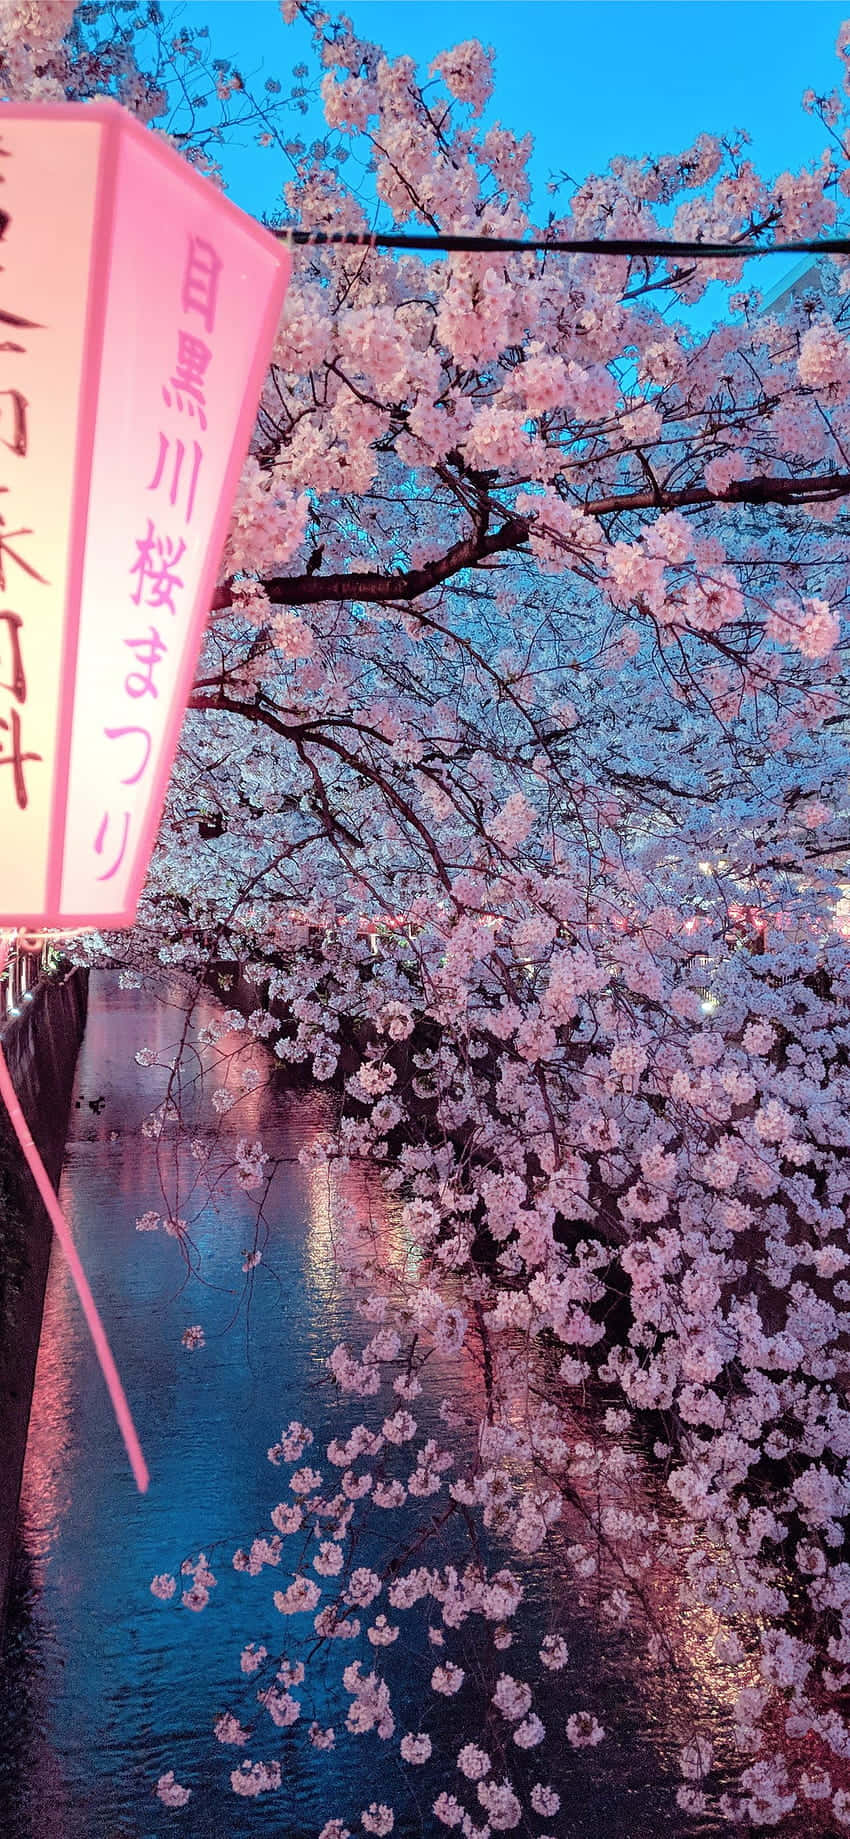 Cherry Blossom Festivalat Dusk Wallpaper